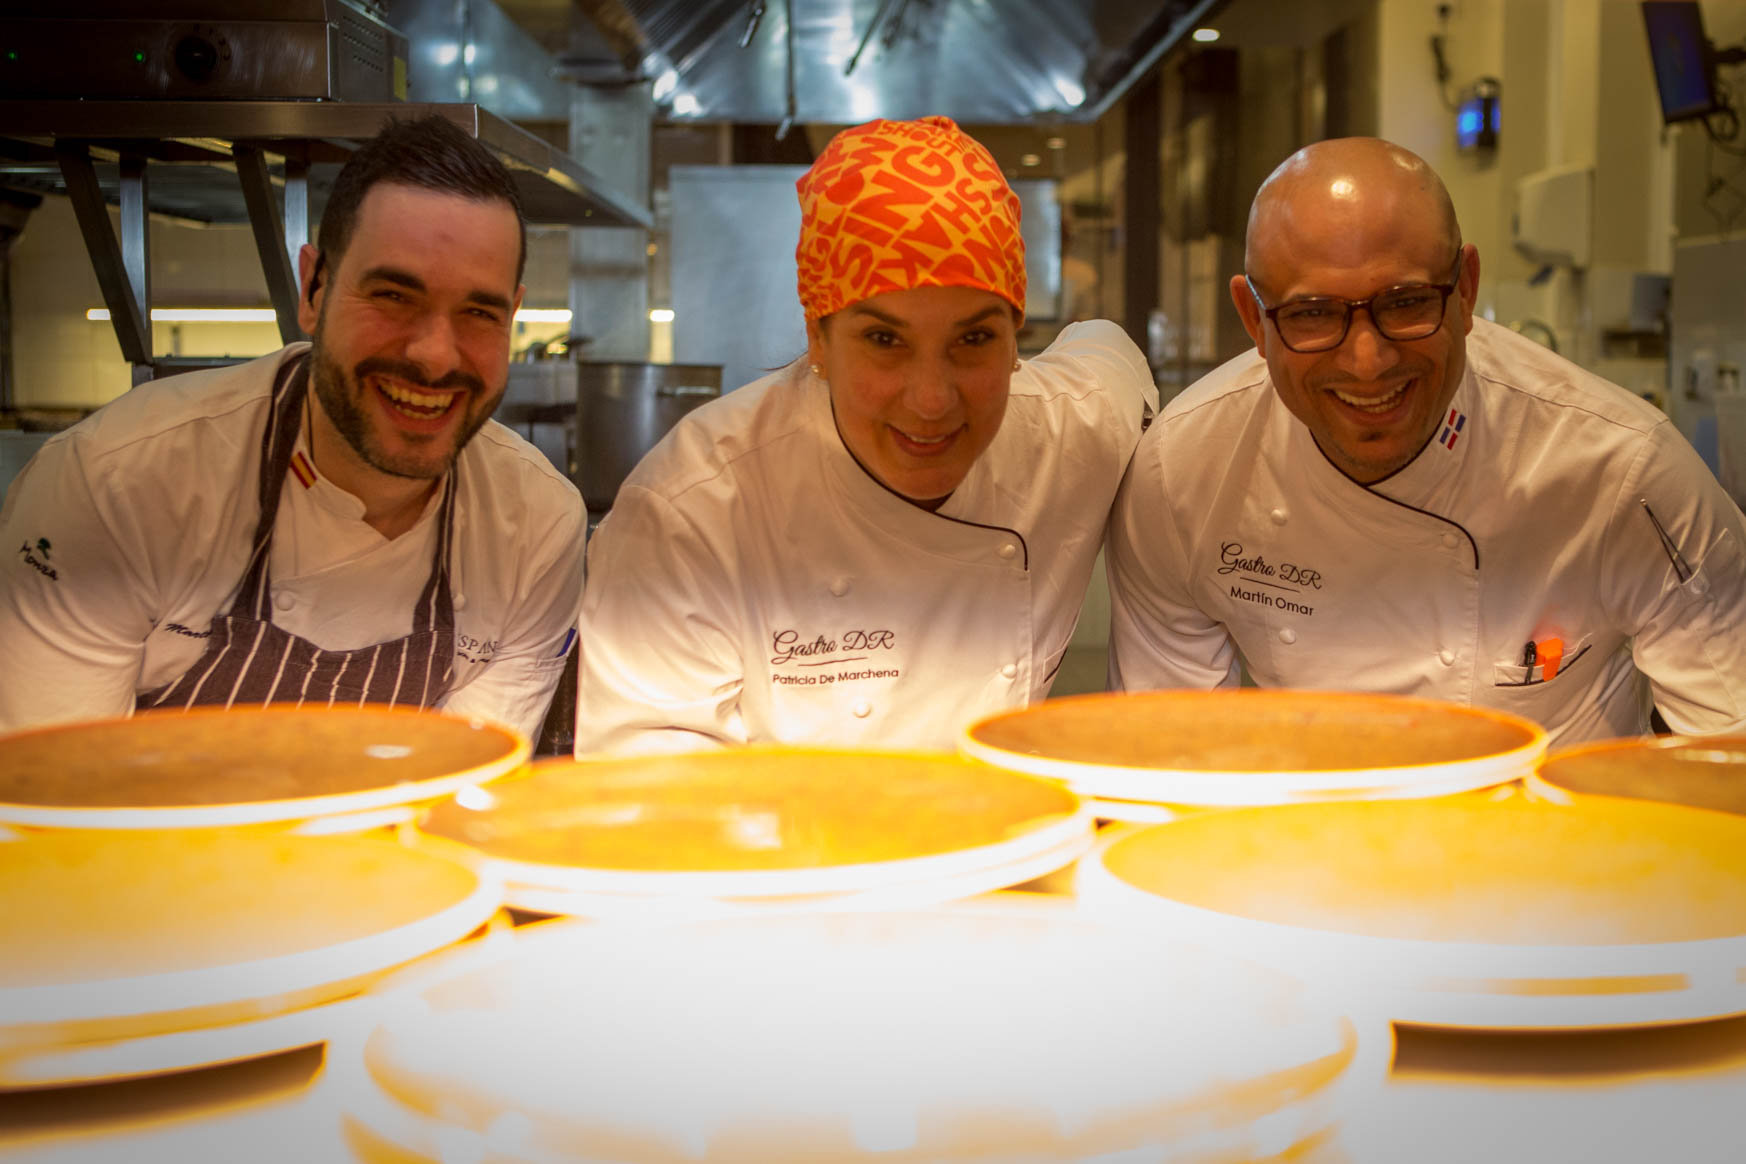 Los chef dominicanos,, Víctor Sánchez, Martín Oman y Patricia de Marchena, seleccionados para participar en GastroDR 2018